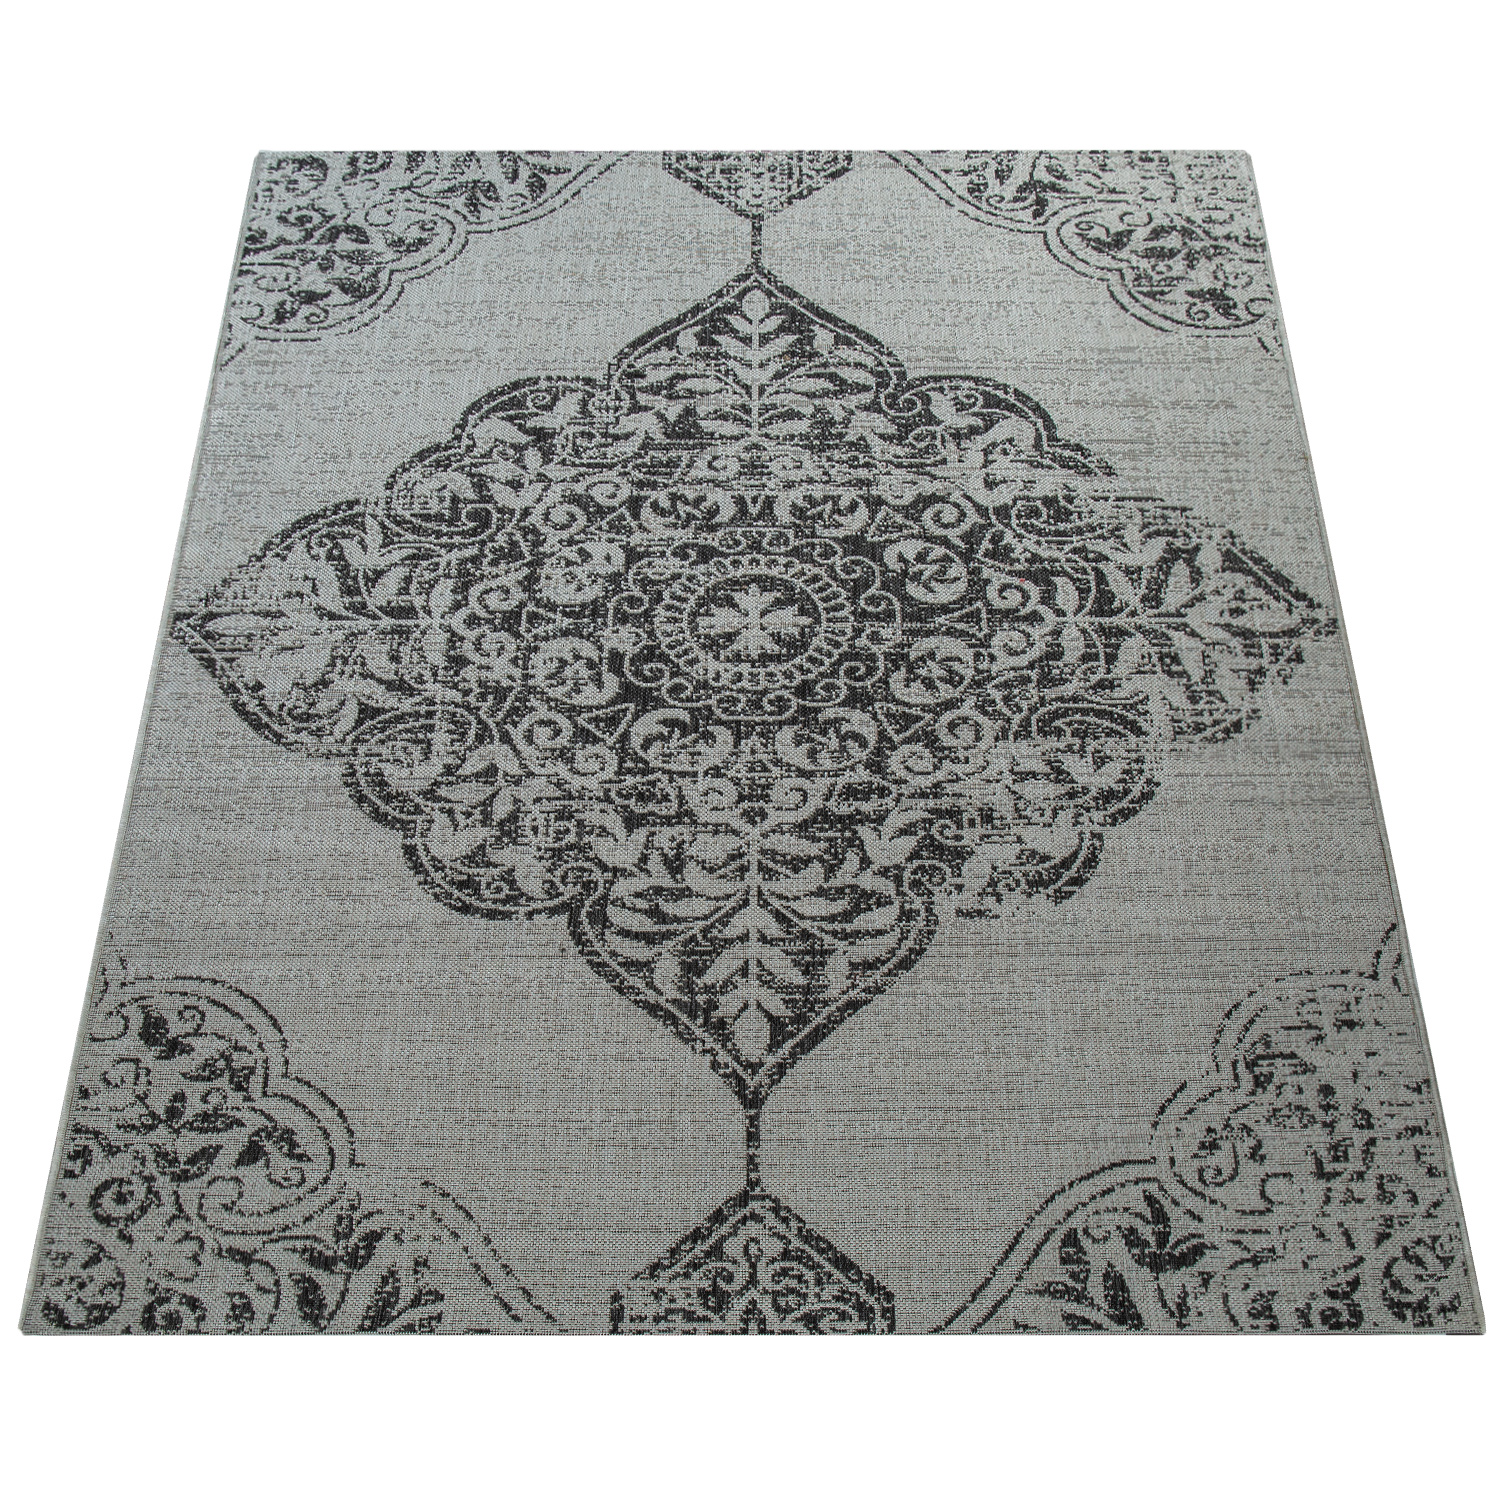 Outdoor Teppich Vintage Design Paisley Muster Grau Orientalisch